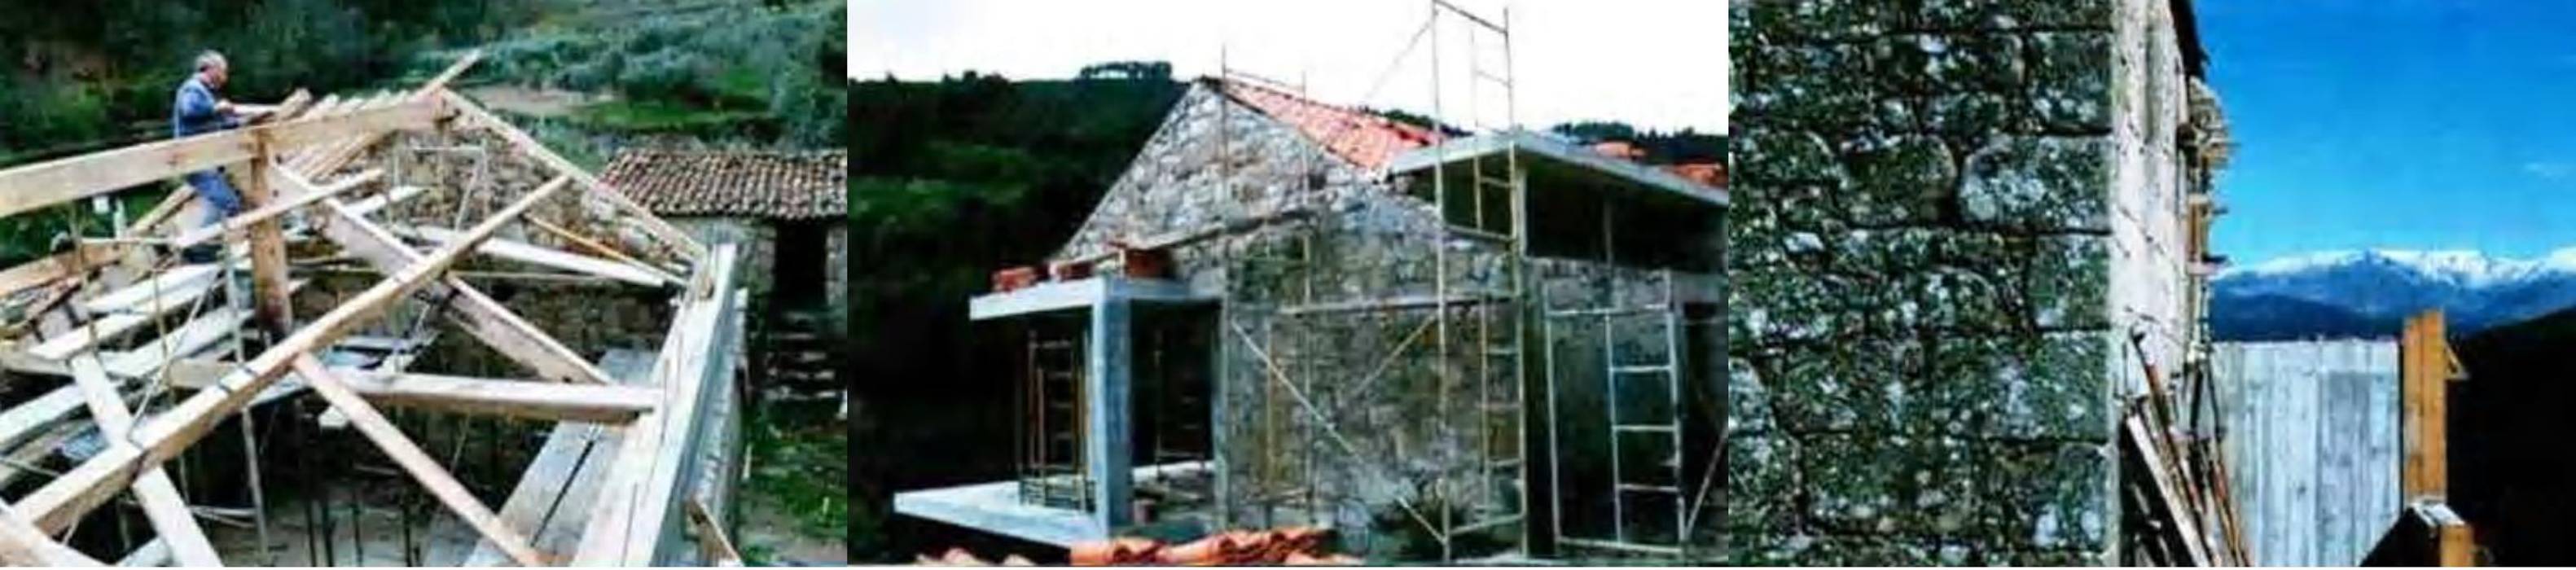 Aldeia das Dez - Durante a reconstrução Almont - Projectos de Construção Civil, Lda.